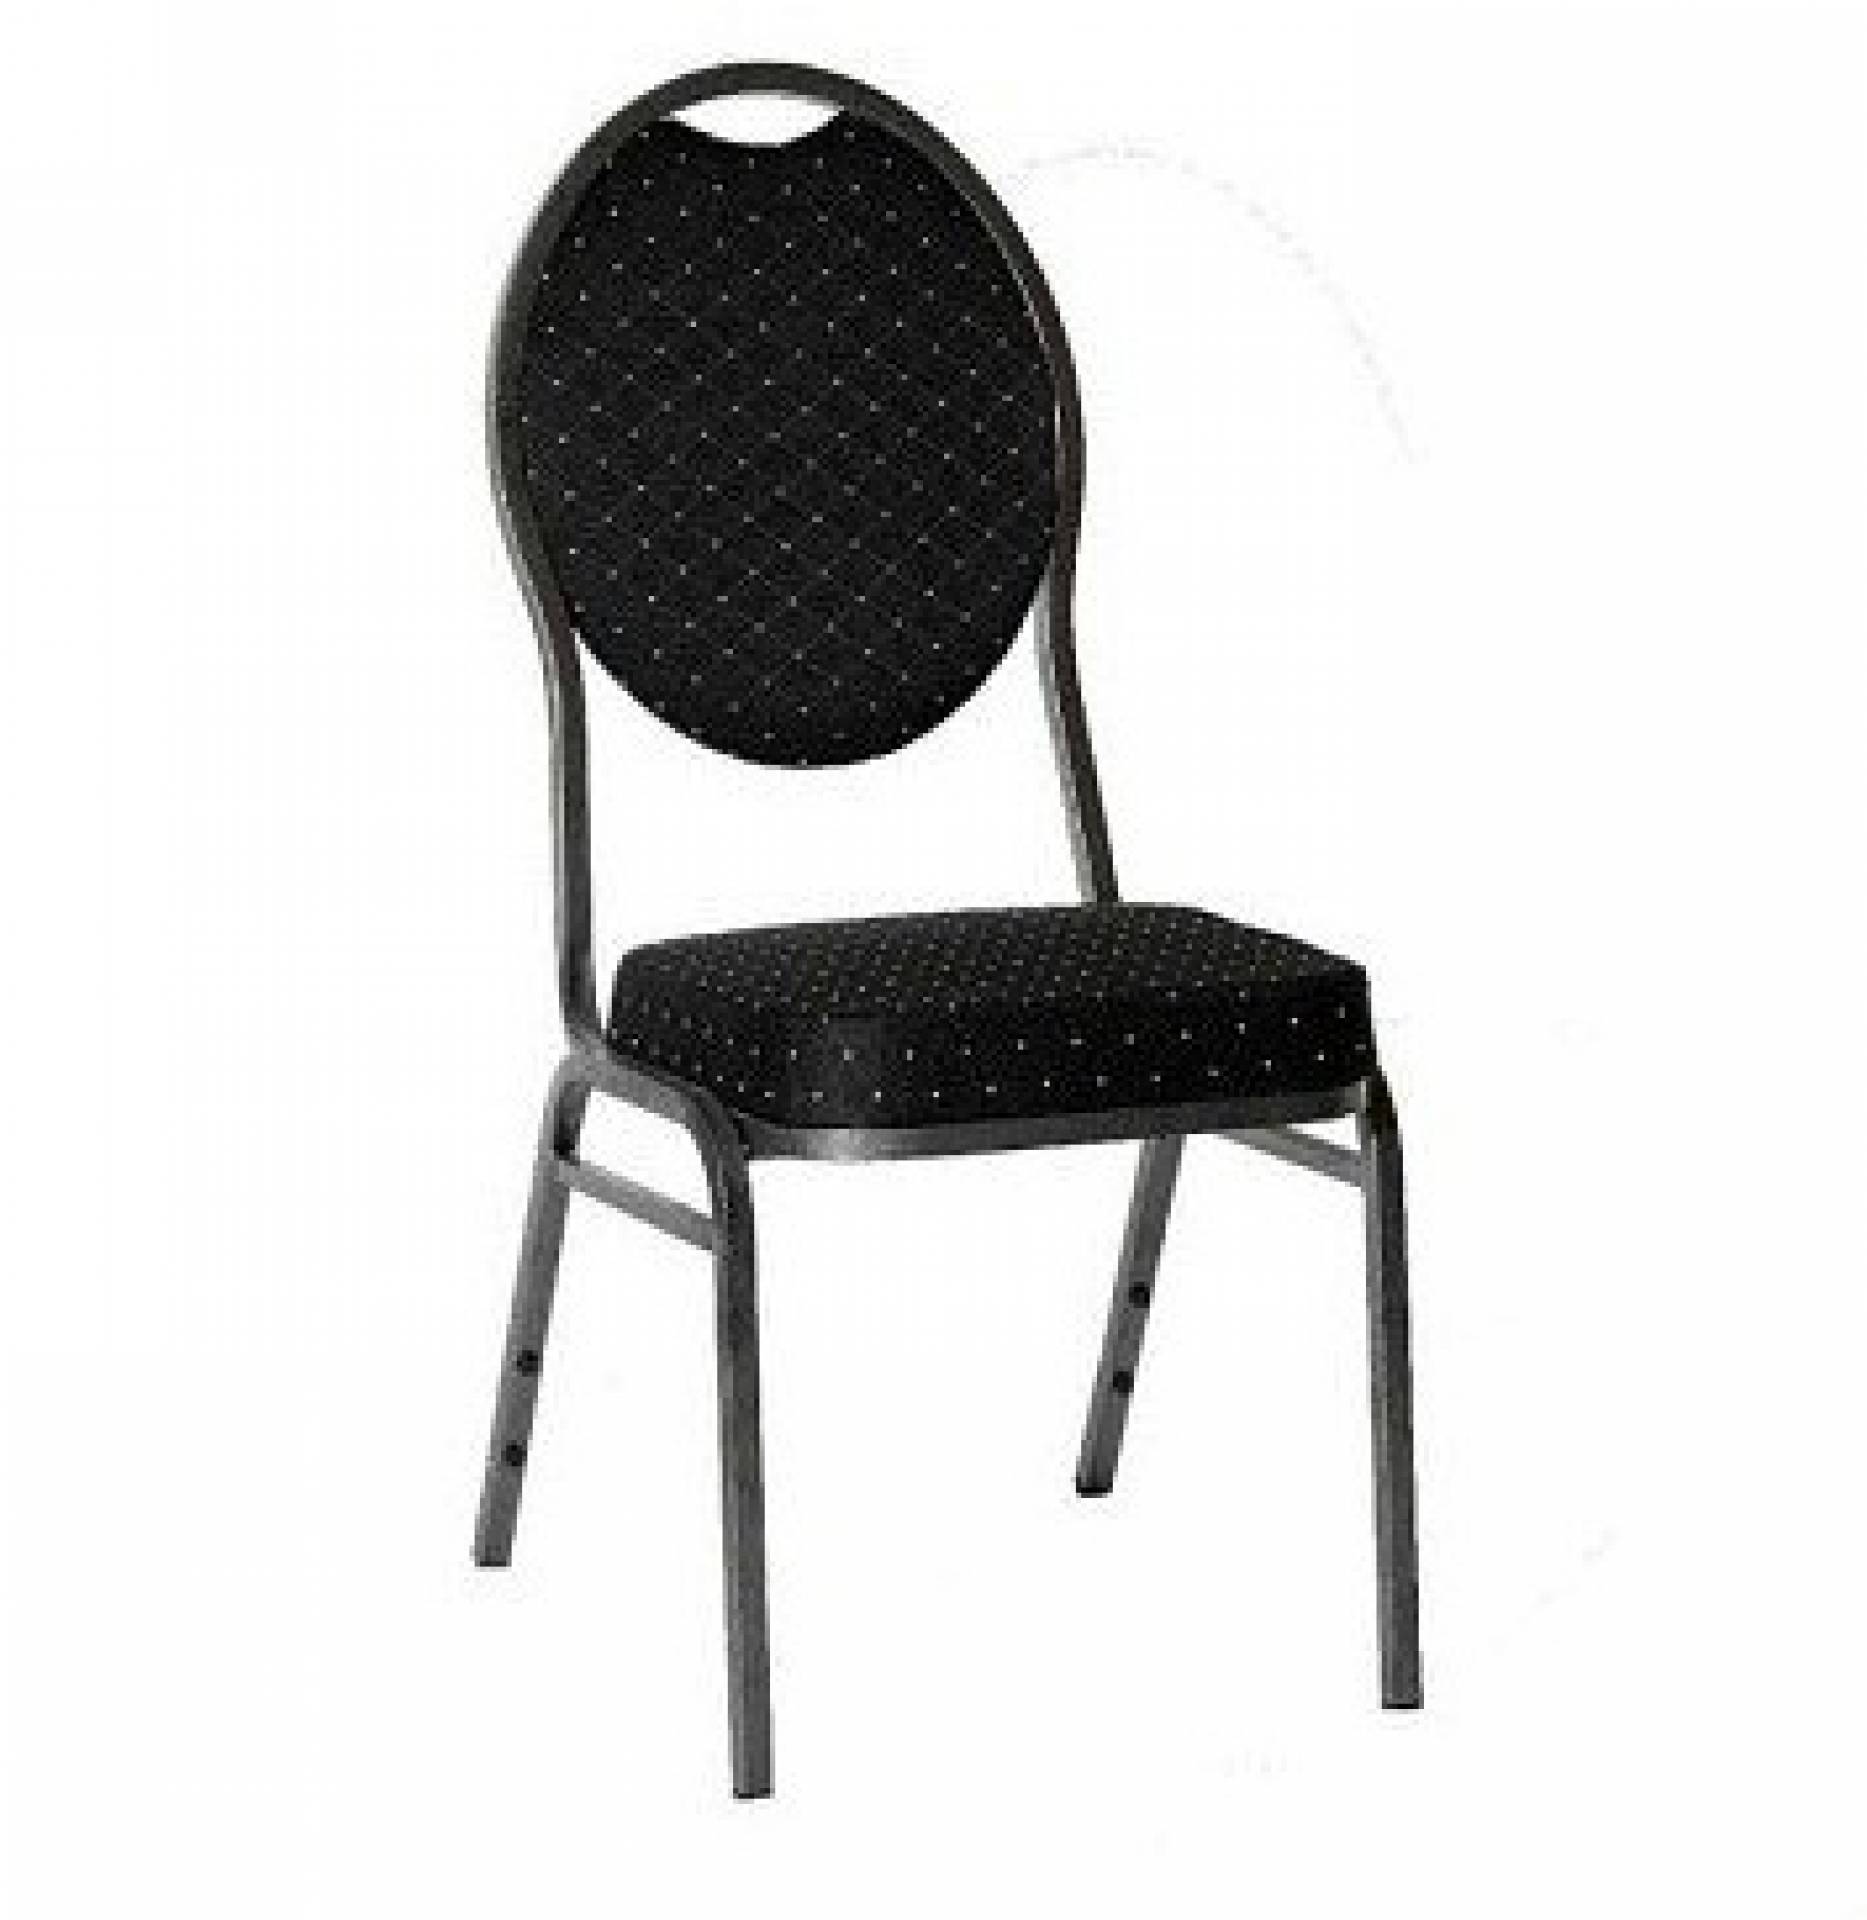 Židle Variant černá - Levná kvalitní židle